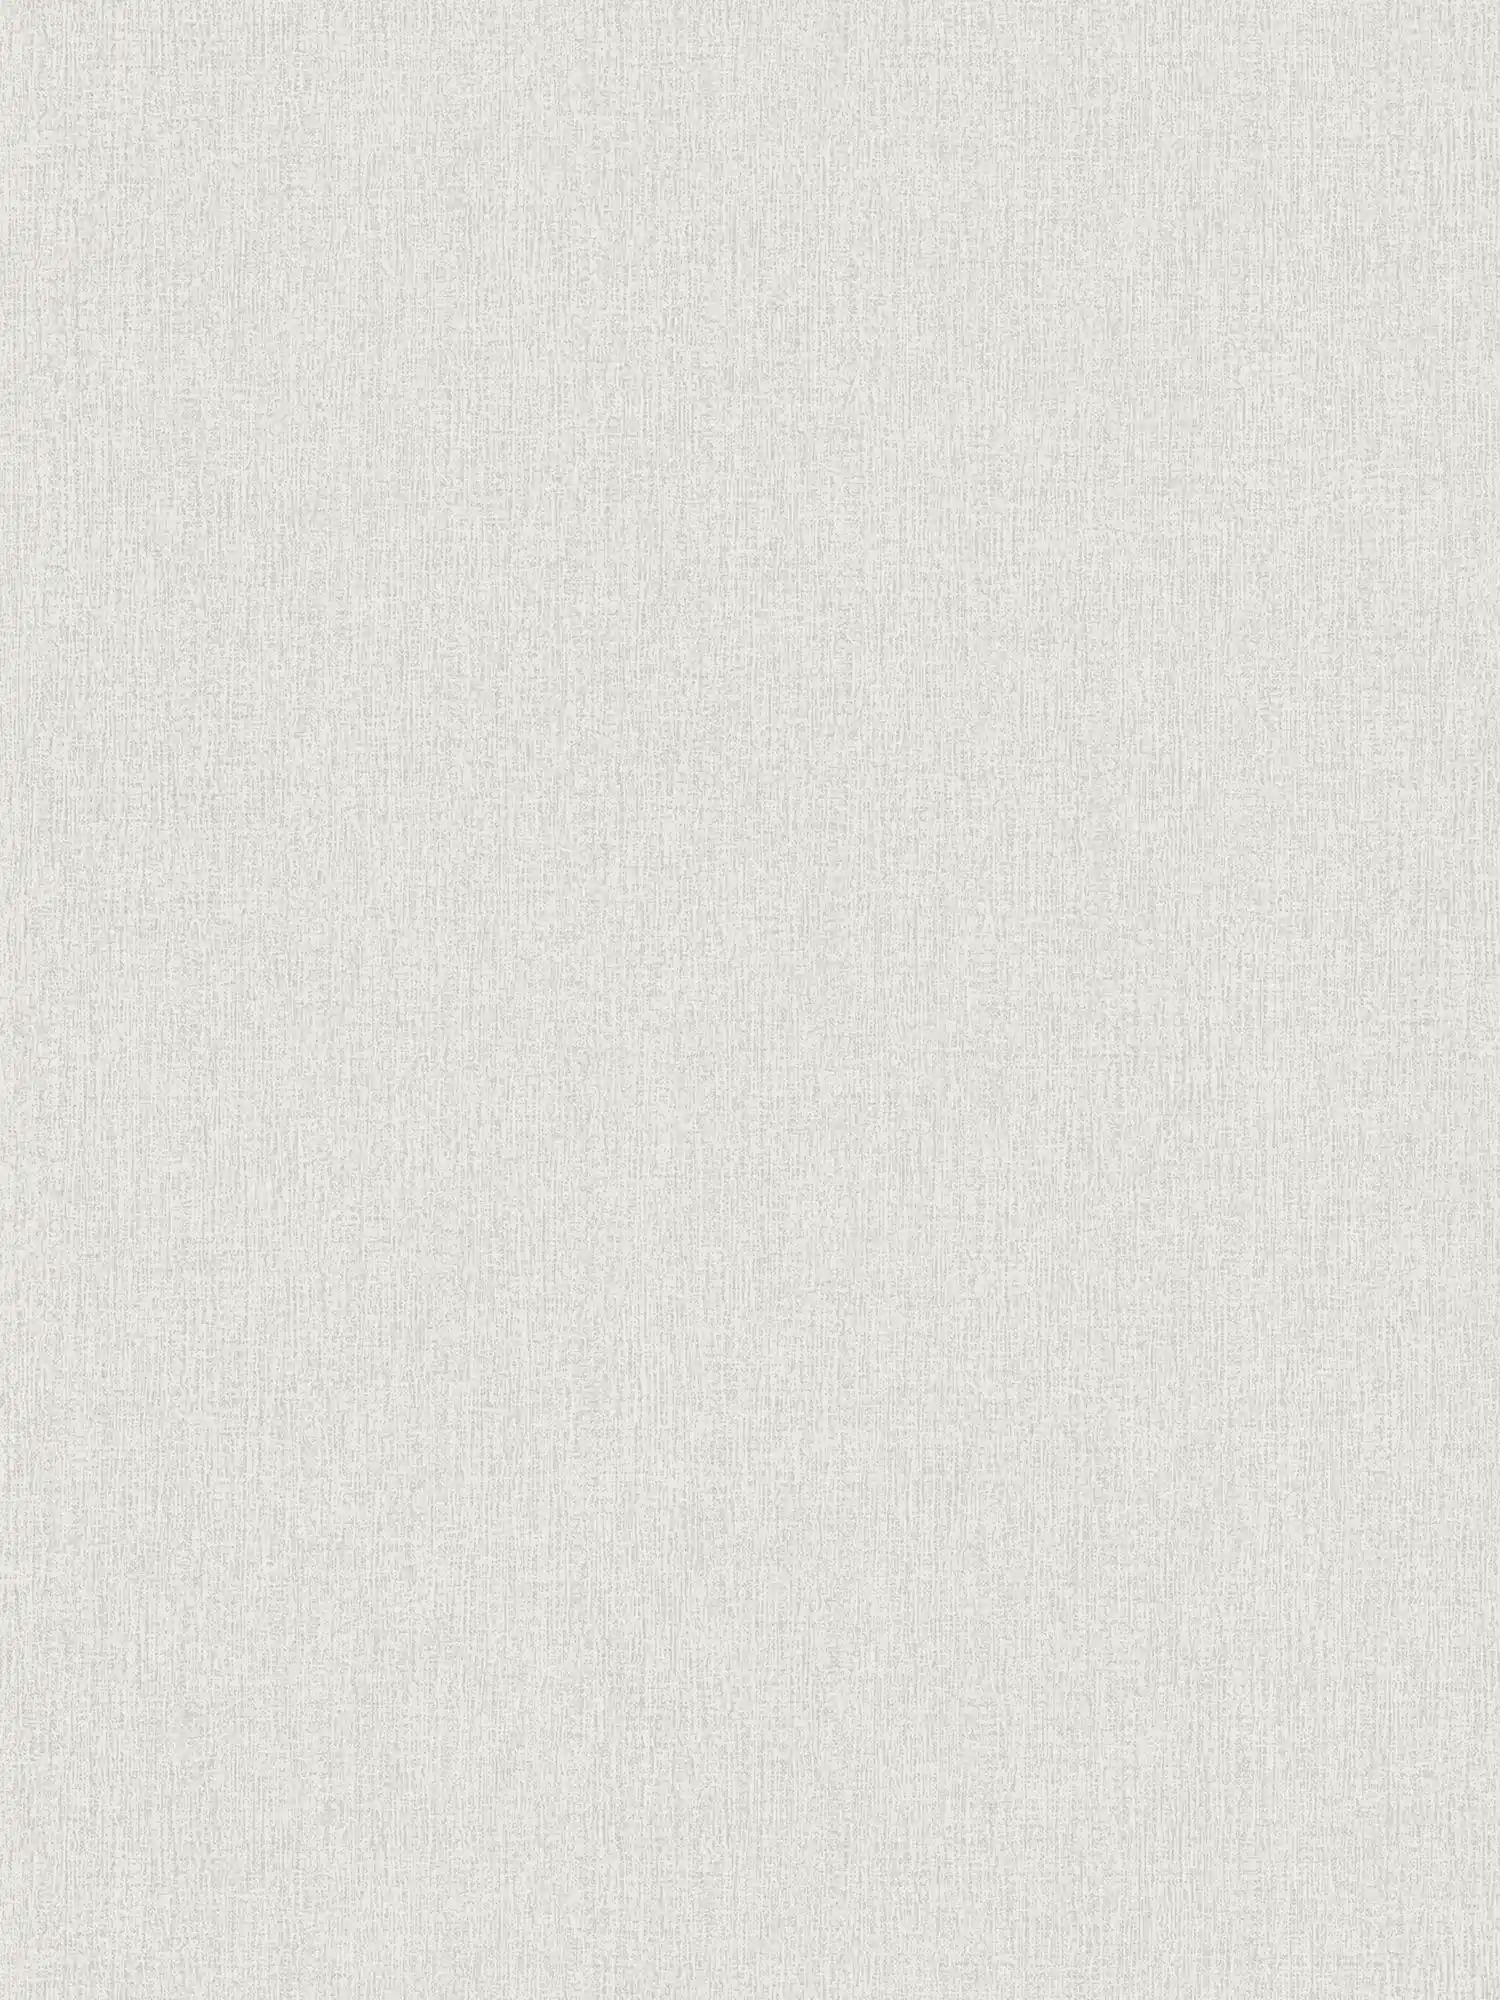 Wallpaper linen look, plain & mottled - white
